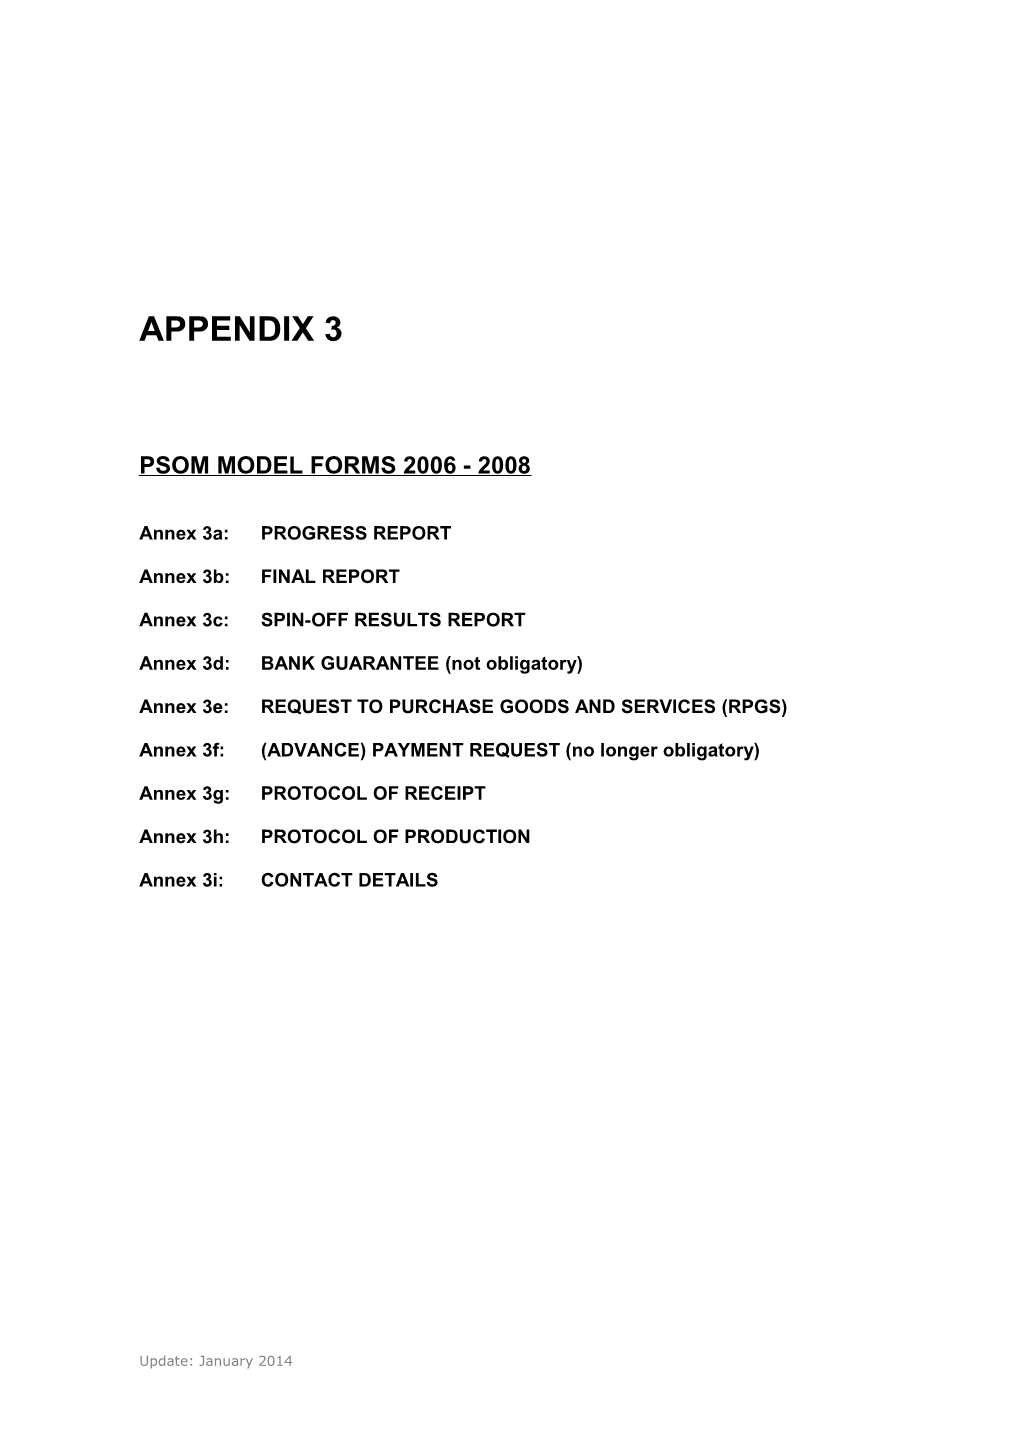 Psom Model Forms 2006 - 2008